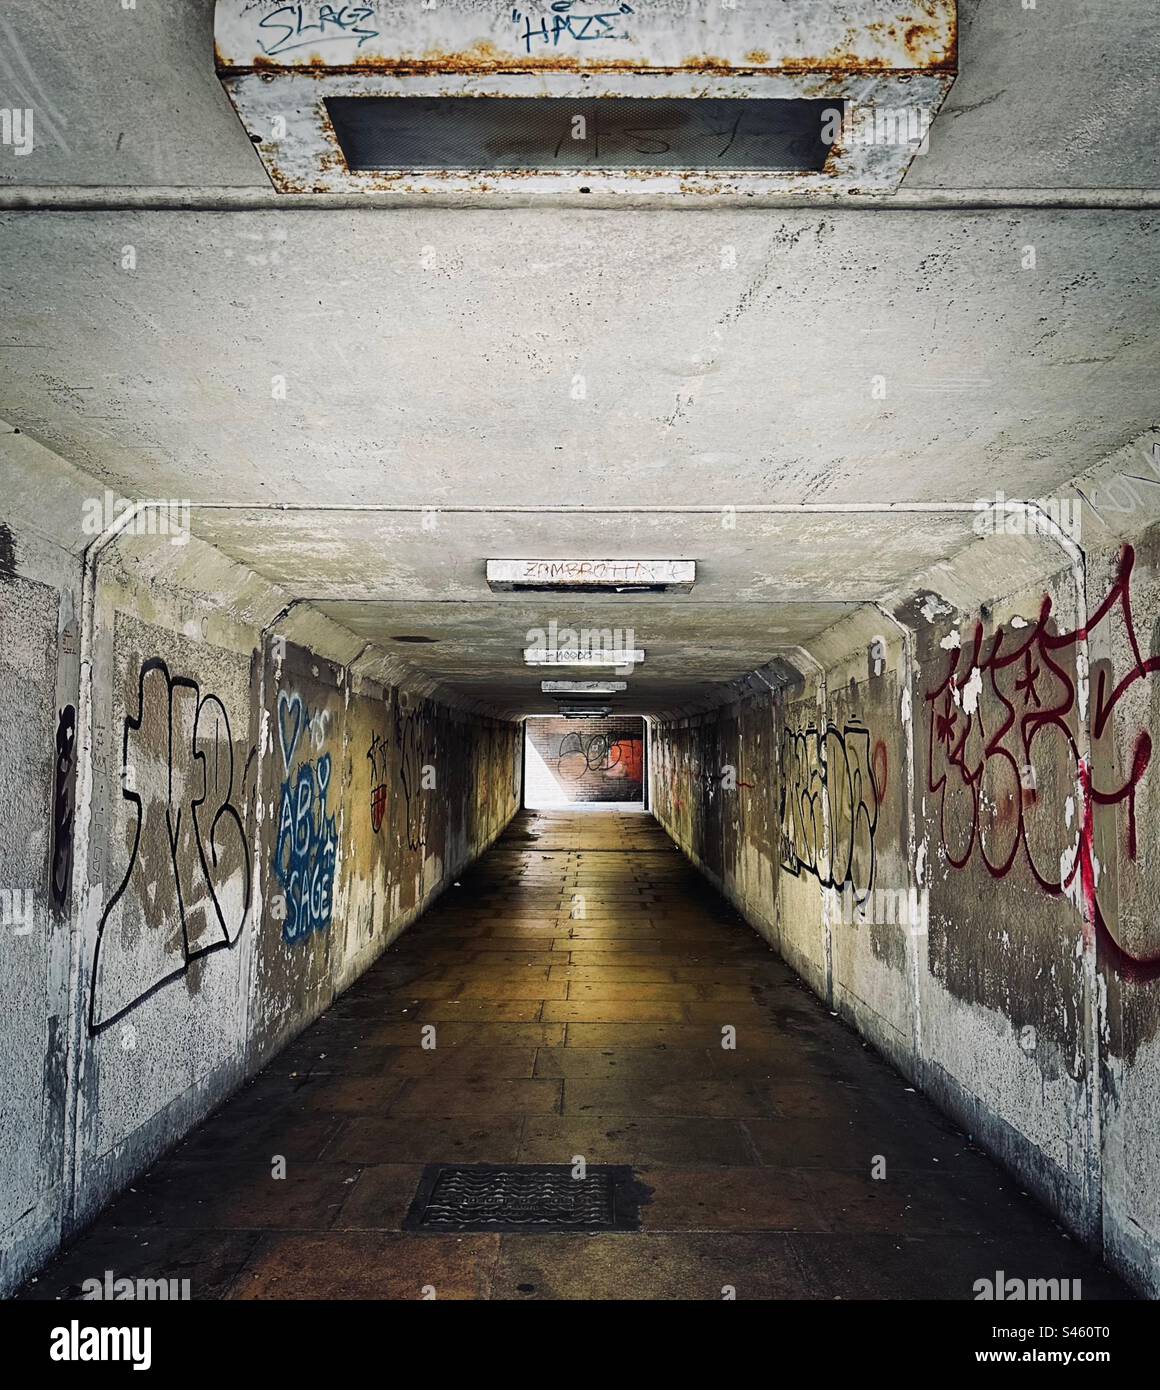 Una metropolitana sotterranea sembra poco invitante - buia, umida e malandata. Le pareti spruzzate con graffiti si trovano su entrambi i lati del passaggio. Foto Stock